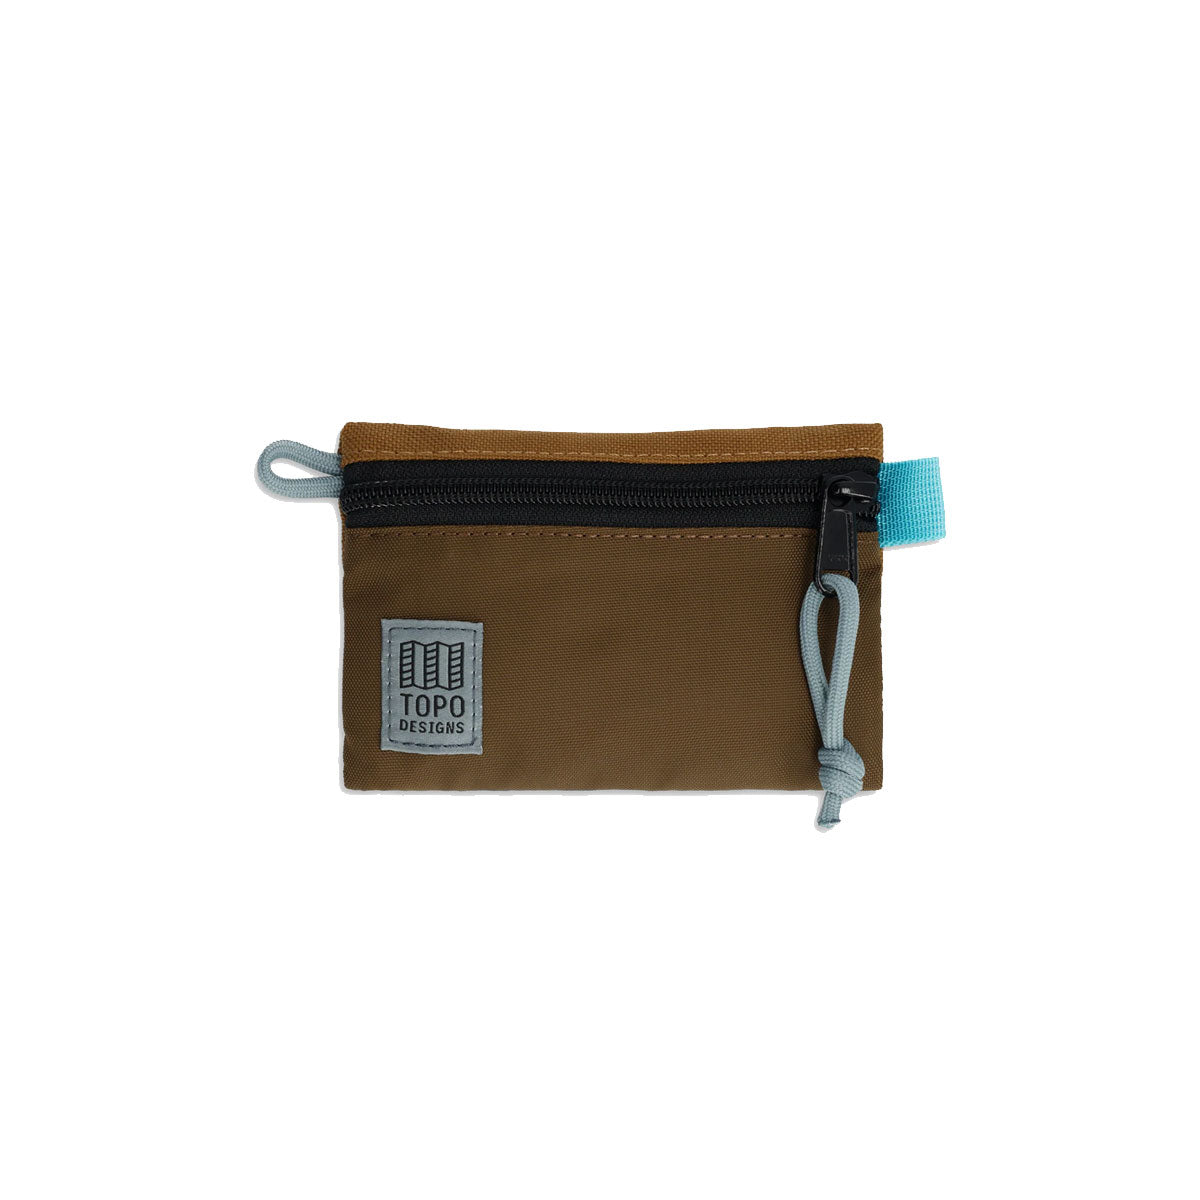 Topo Designs : Accessory Bag : Desert Palm/Pond Blue